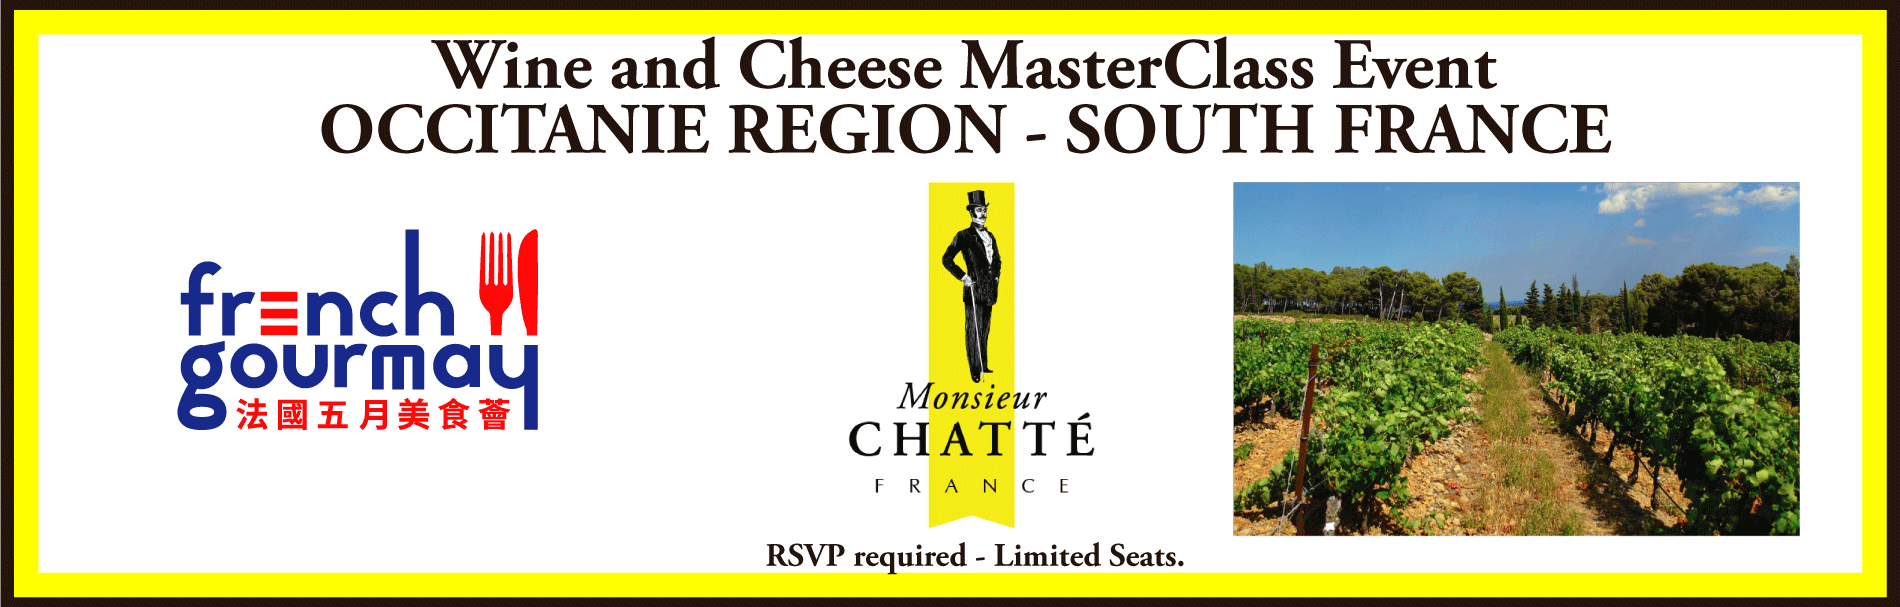 Occitanie MasterClass Wine and Cheese Pairing Event - JUNE 11